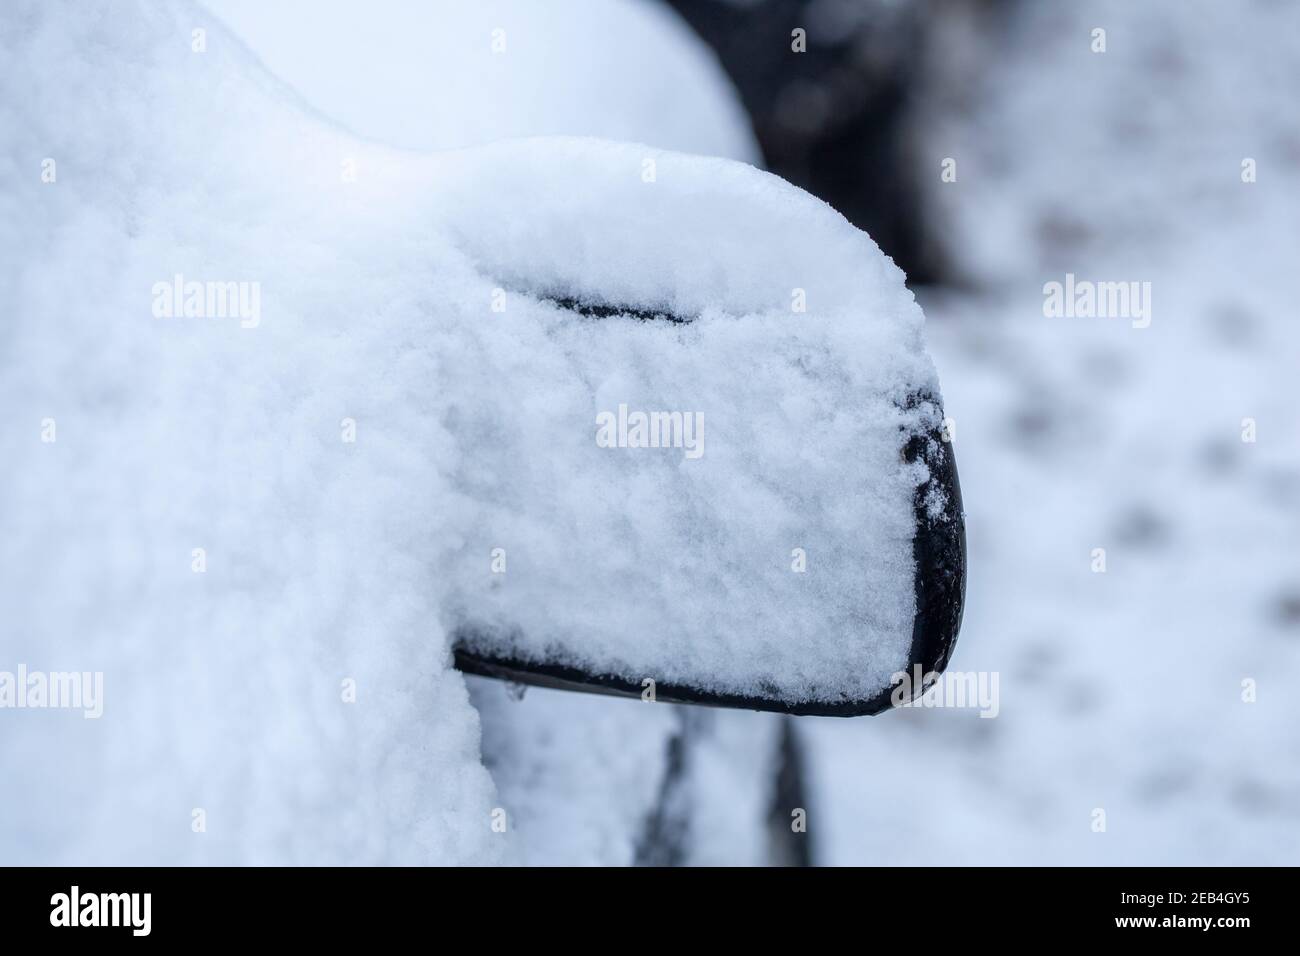 Snowy wipers and windshields on a car, Germany I Verschneiter Scheibenwischer und Windschutzscheiben an einem Auto, Deutschland I Stock Photo